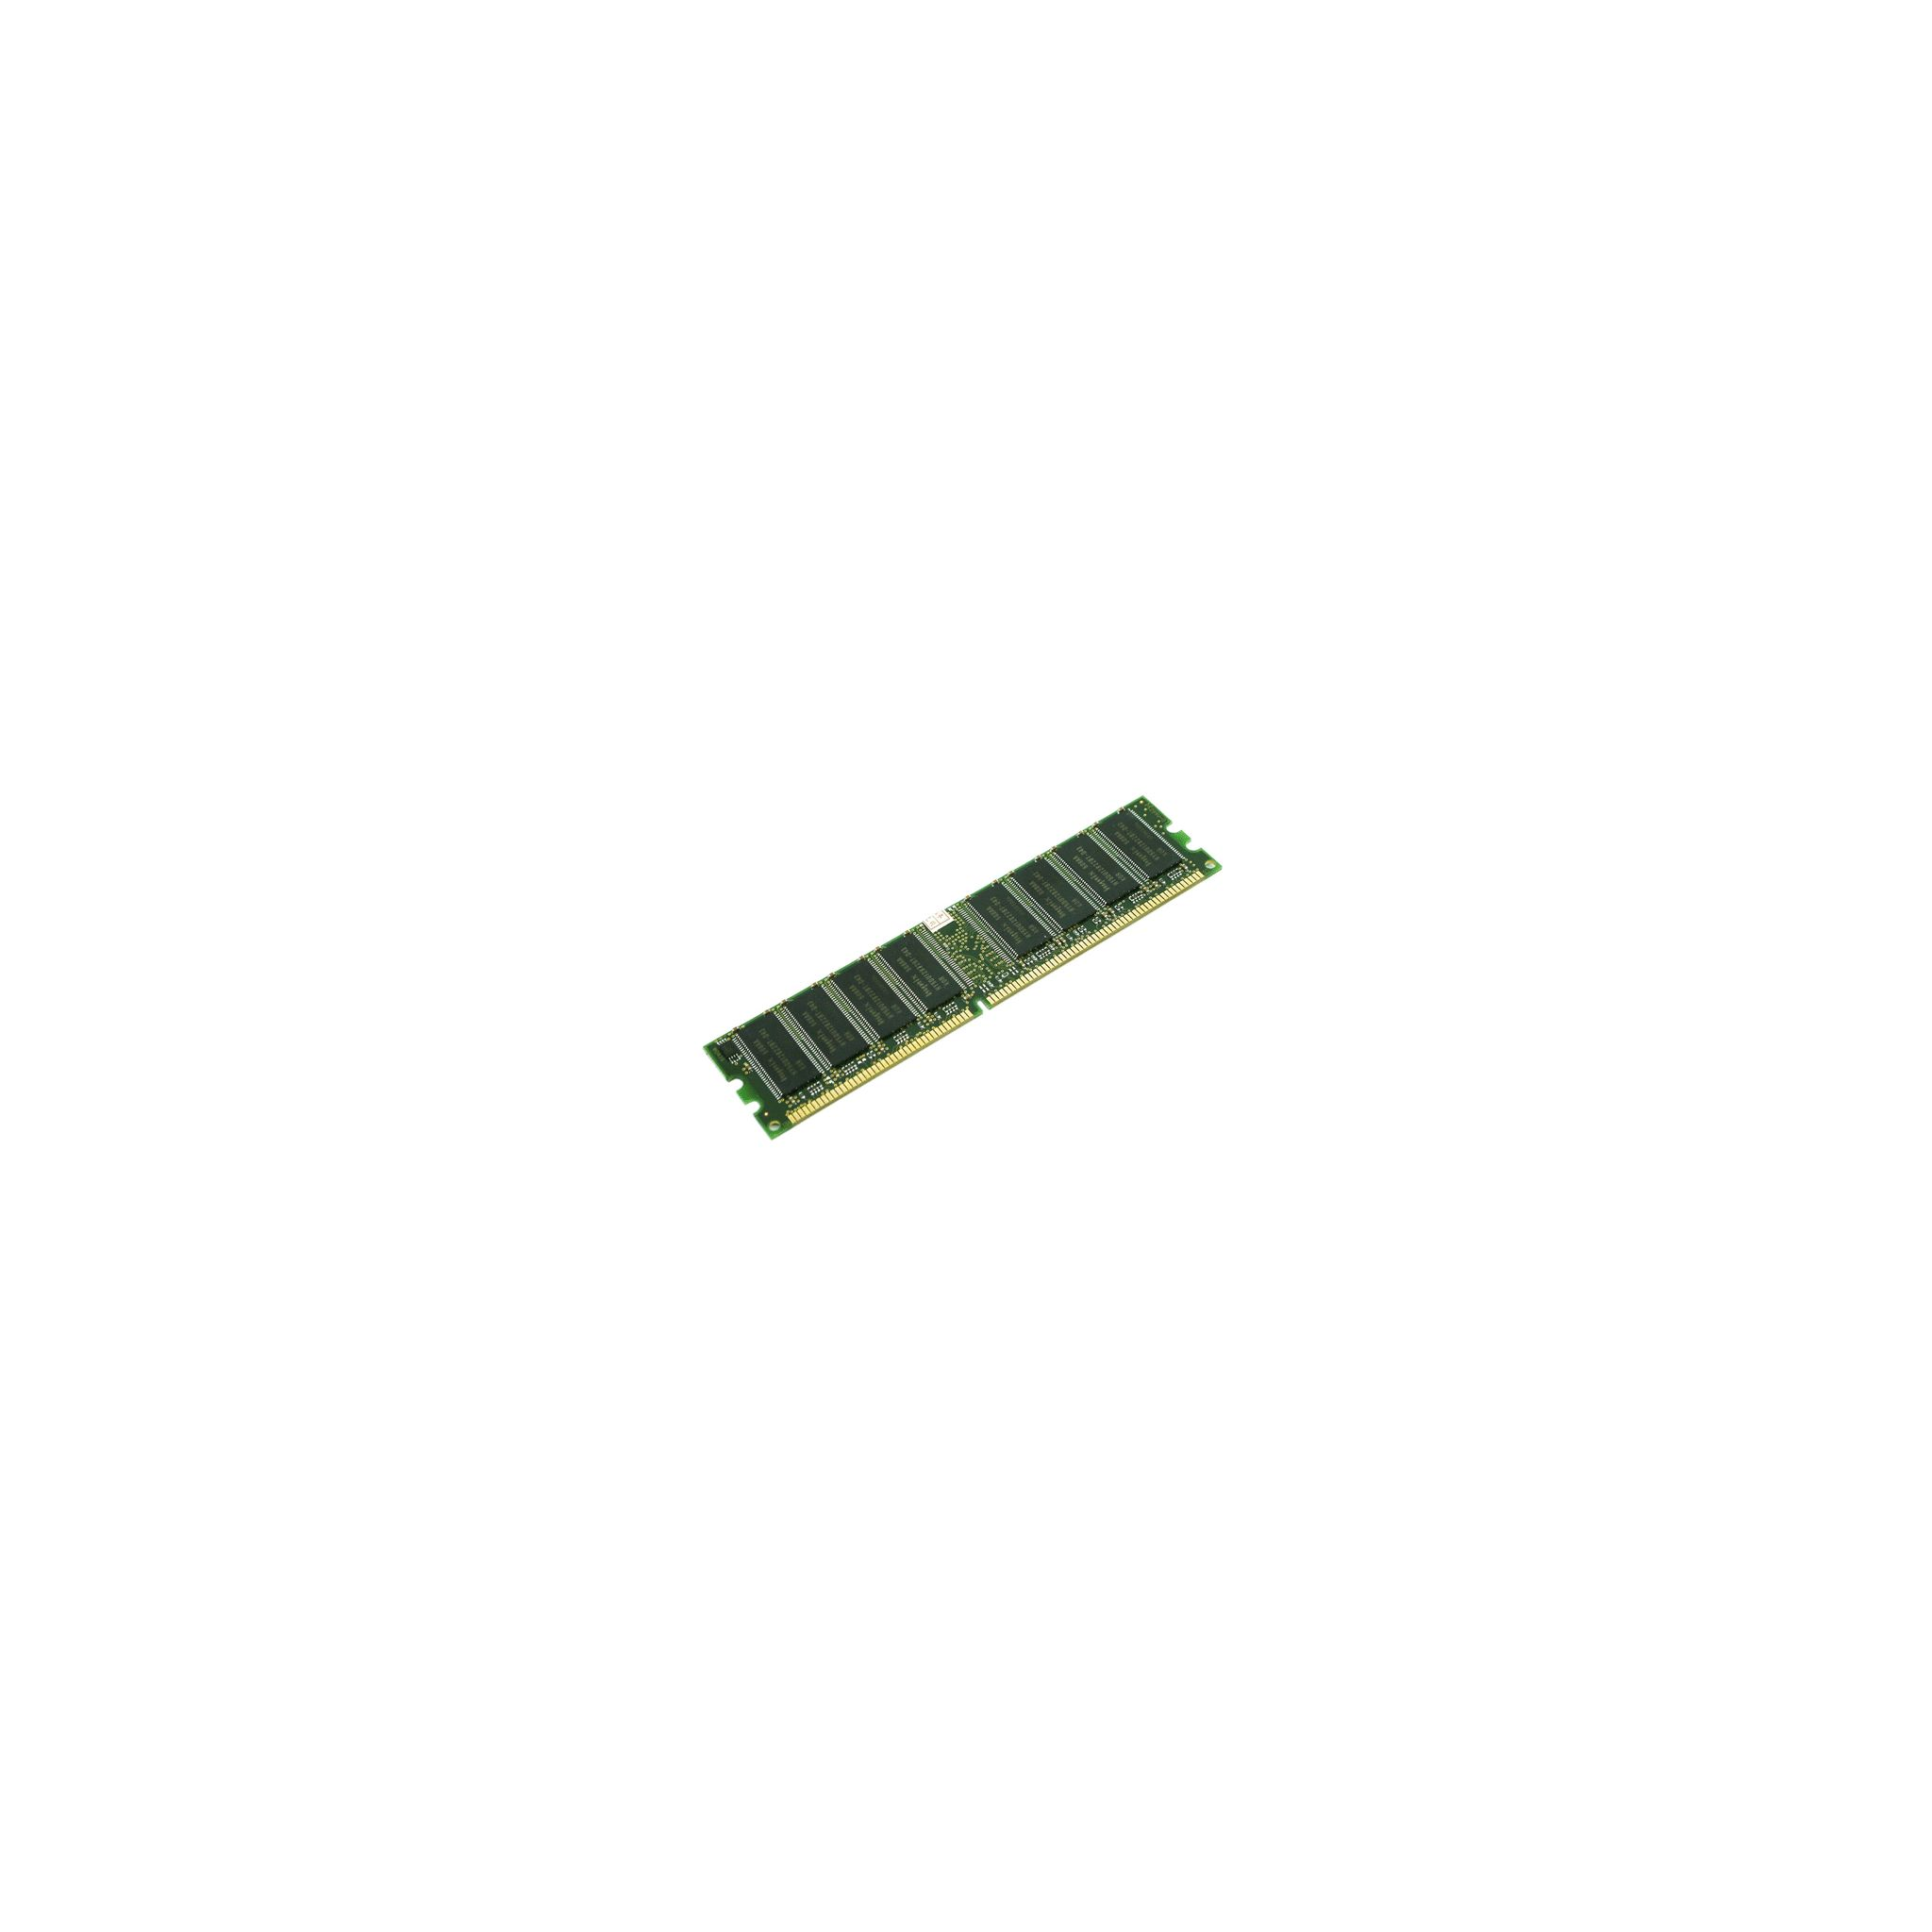 KINGSTON TECHNOLOGY KVR 26 N19S6/4 Arbeitsspeicher DDR4 GB 4